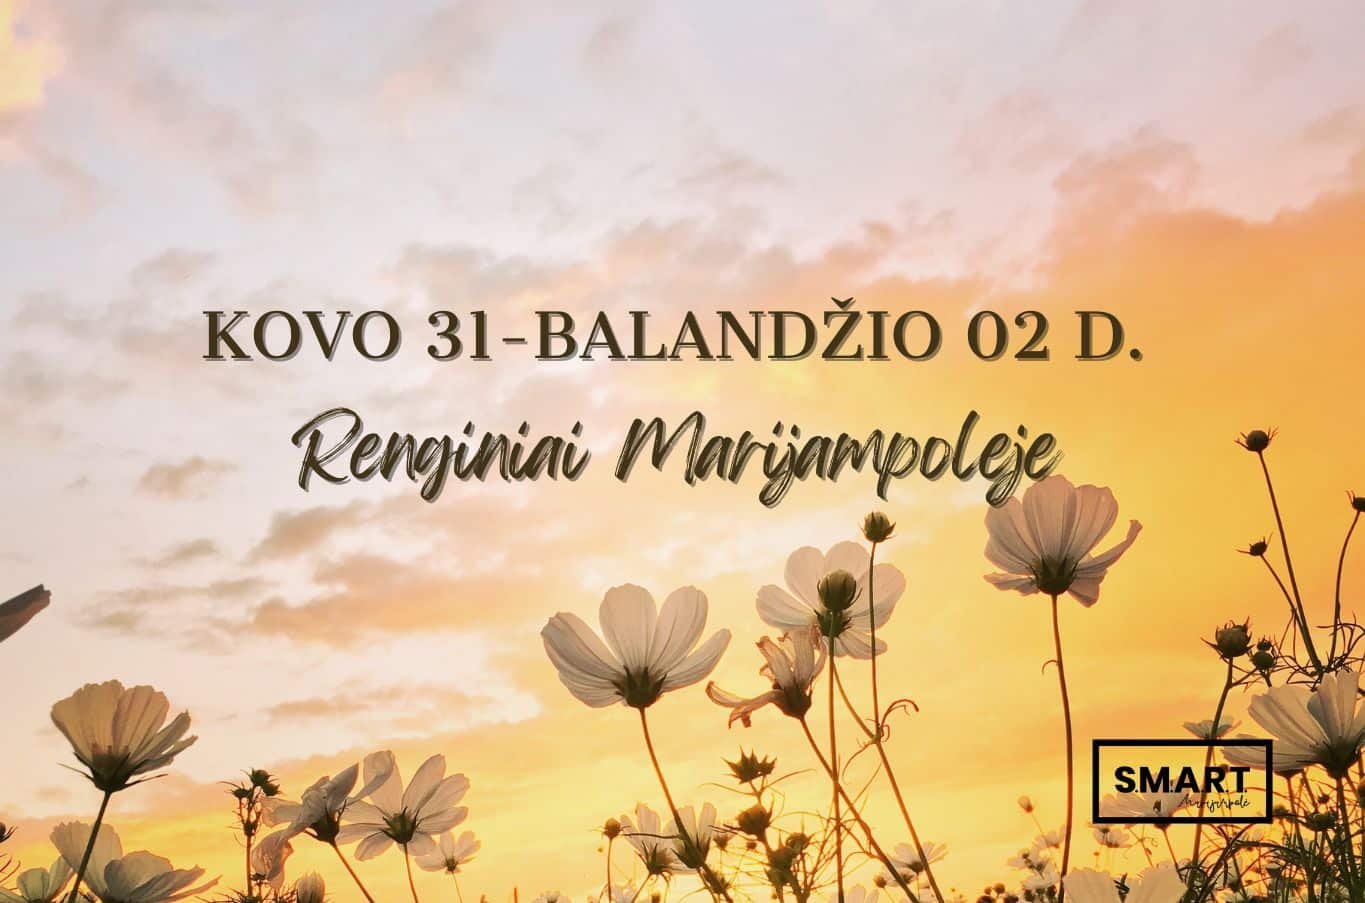 You are currently viewing Savaitgalio renginiai Marijampolėje | 03.31-04.02